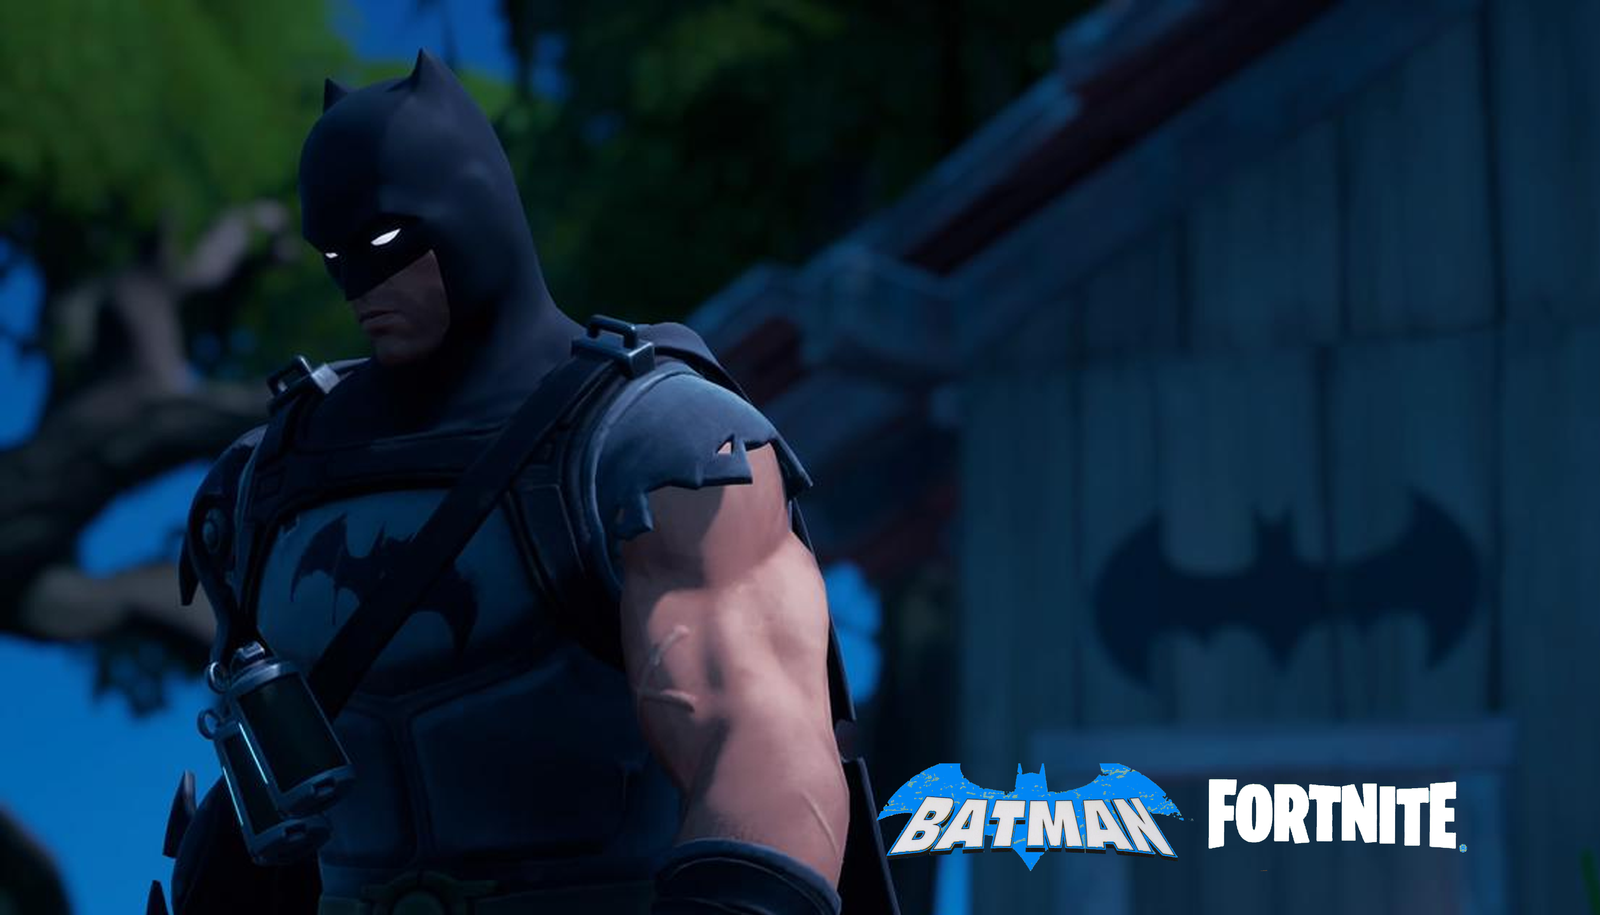 Editora Panini anuncia novo crossover entre Batman e Fortnite